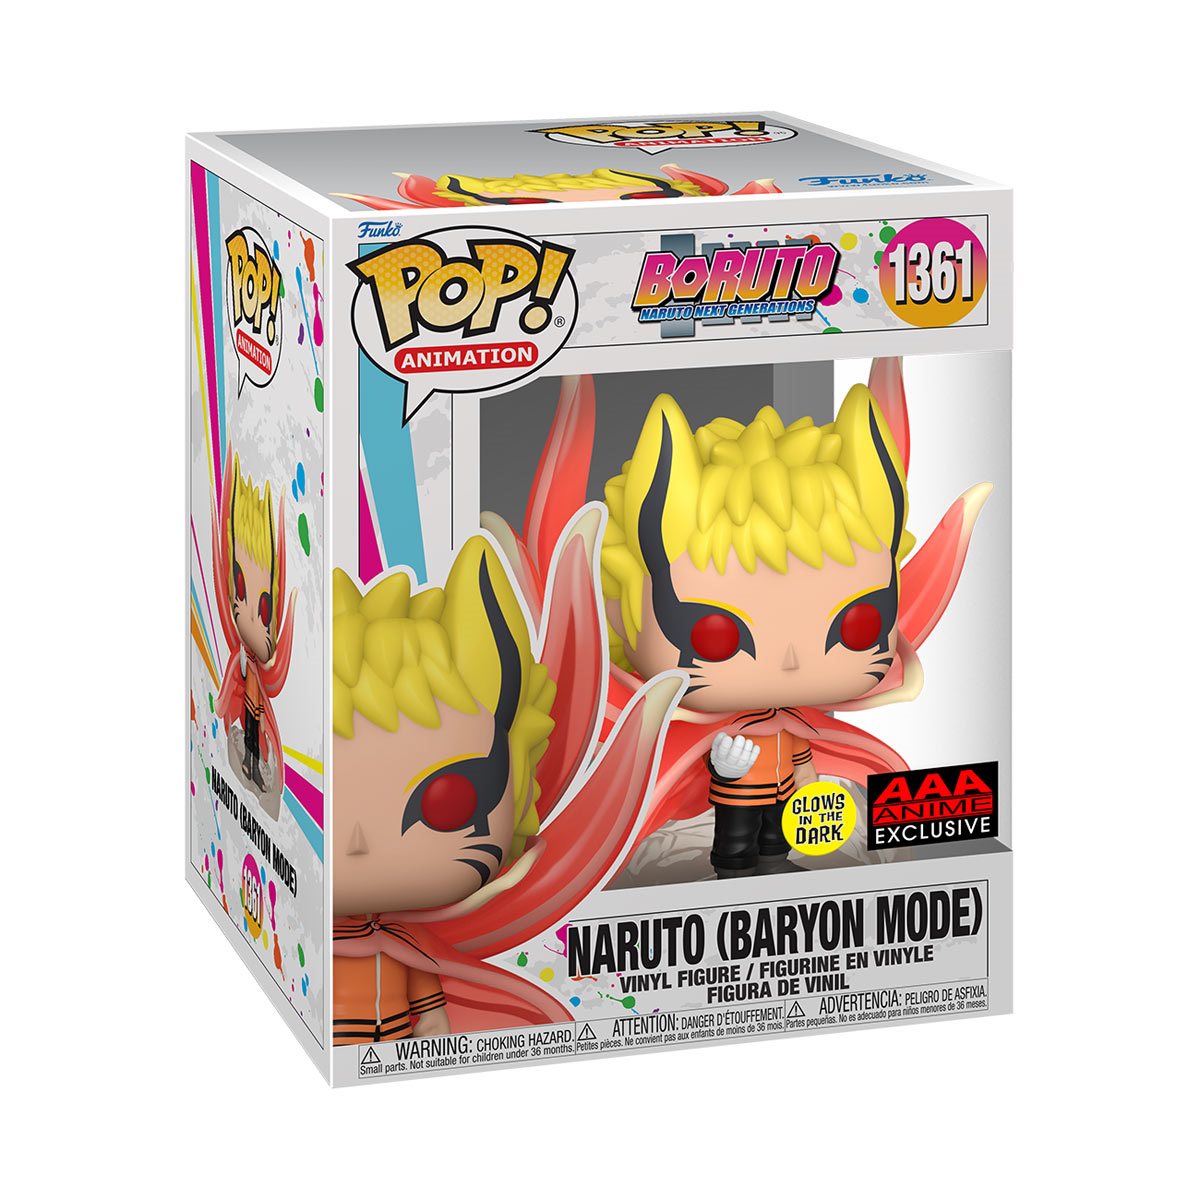 POP! Anime Boruto 6” Naruto (Baryon Mode) GITD #1361